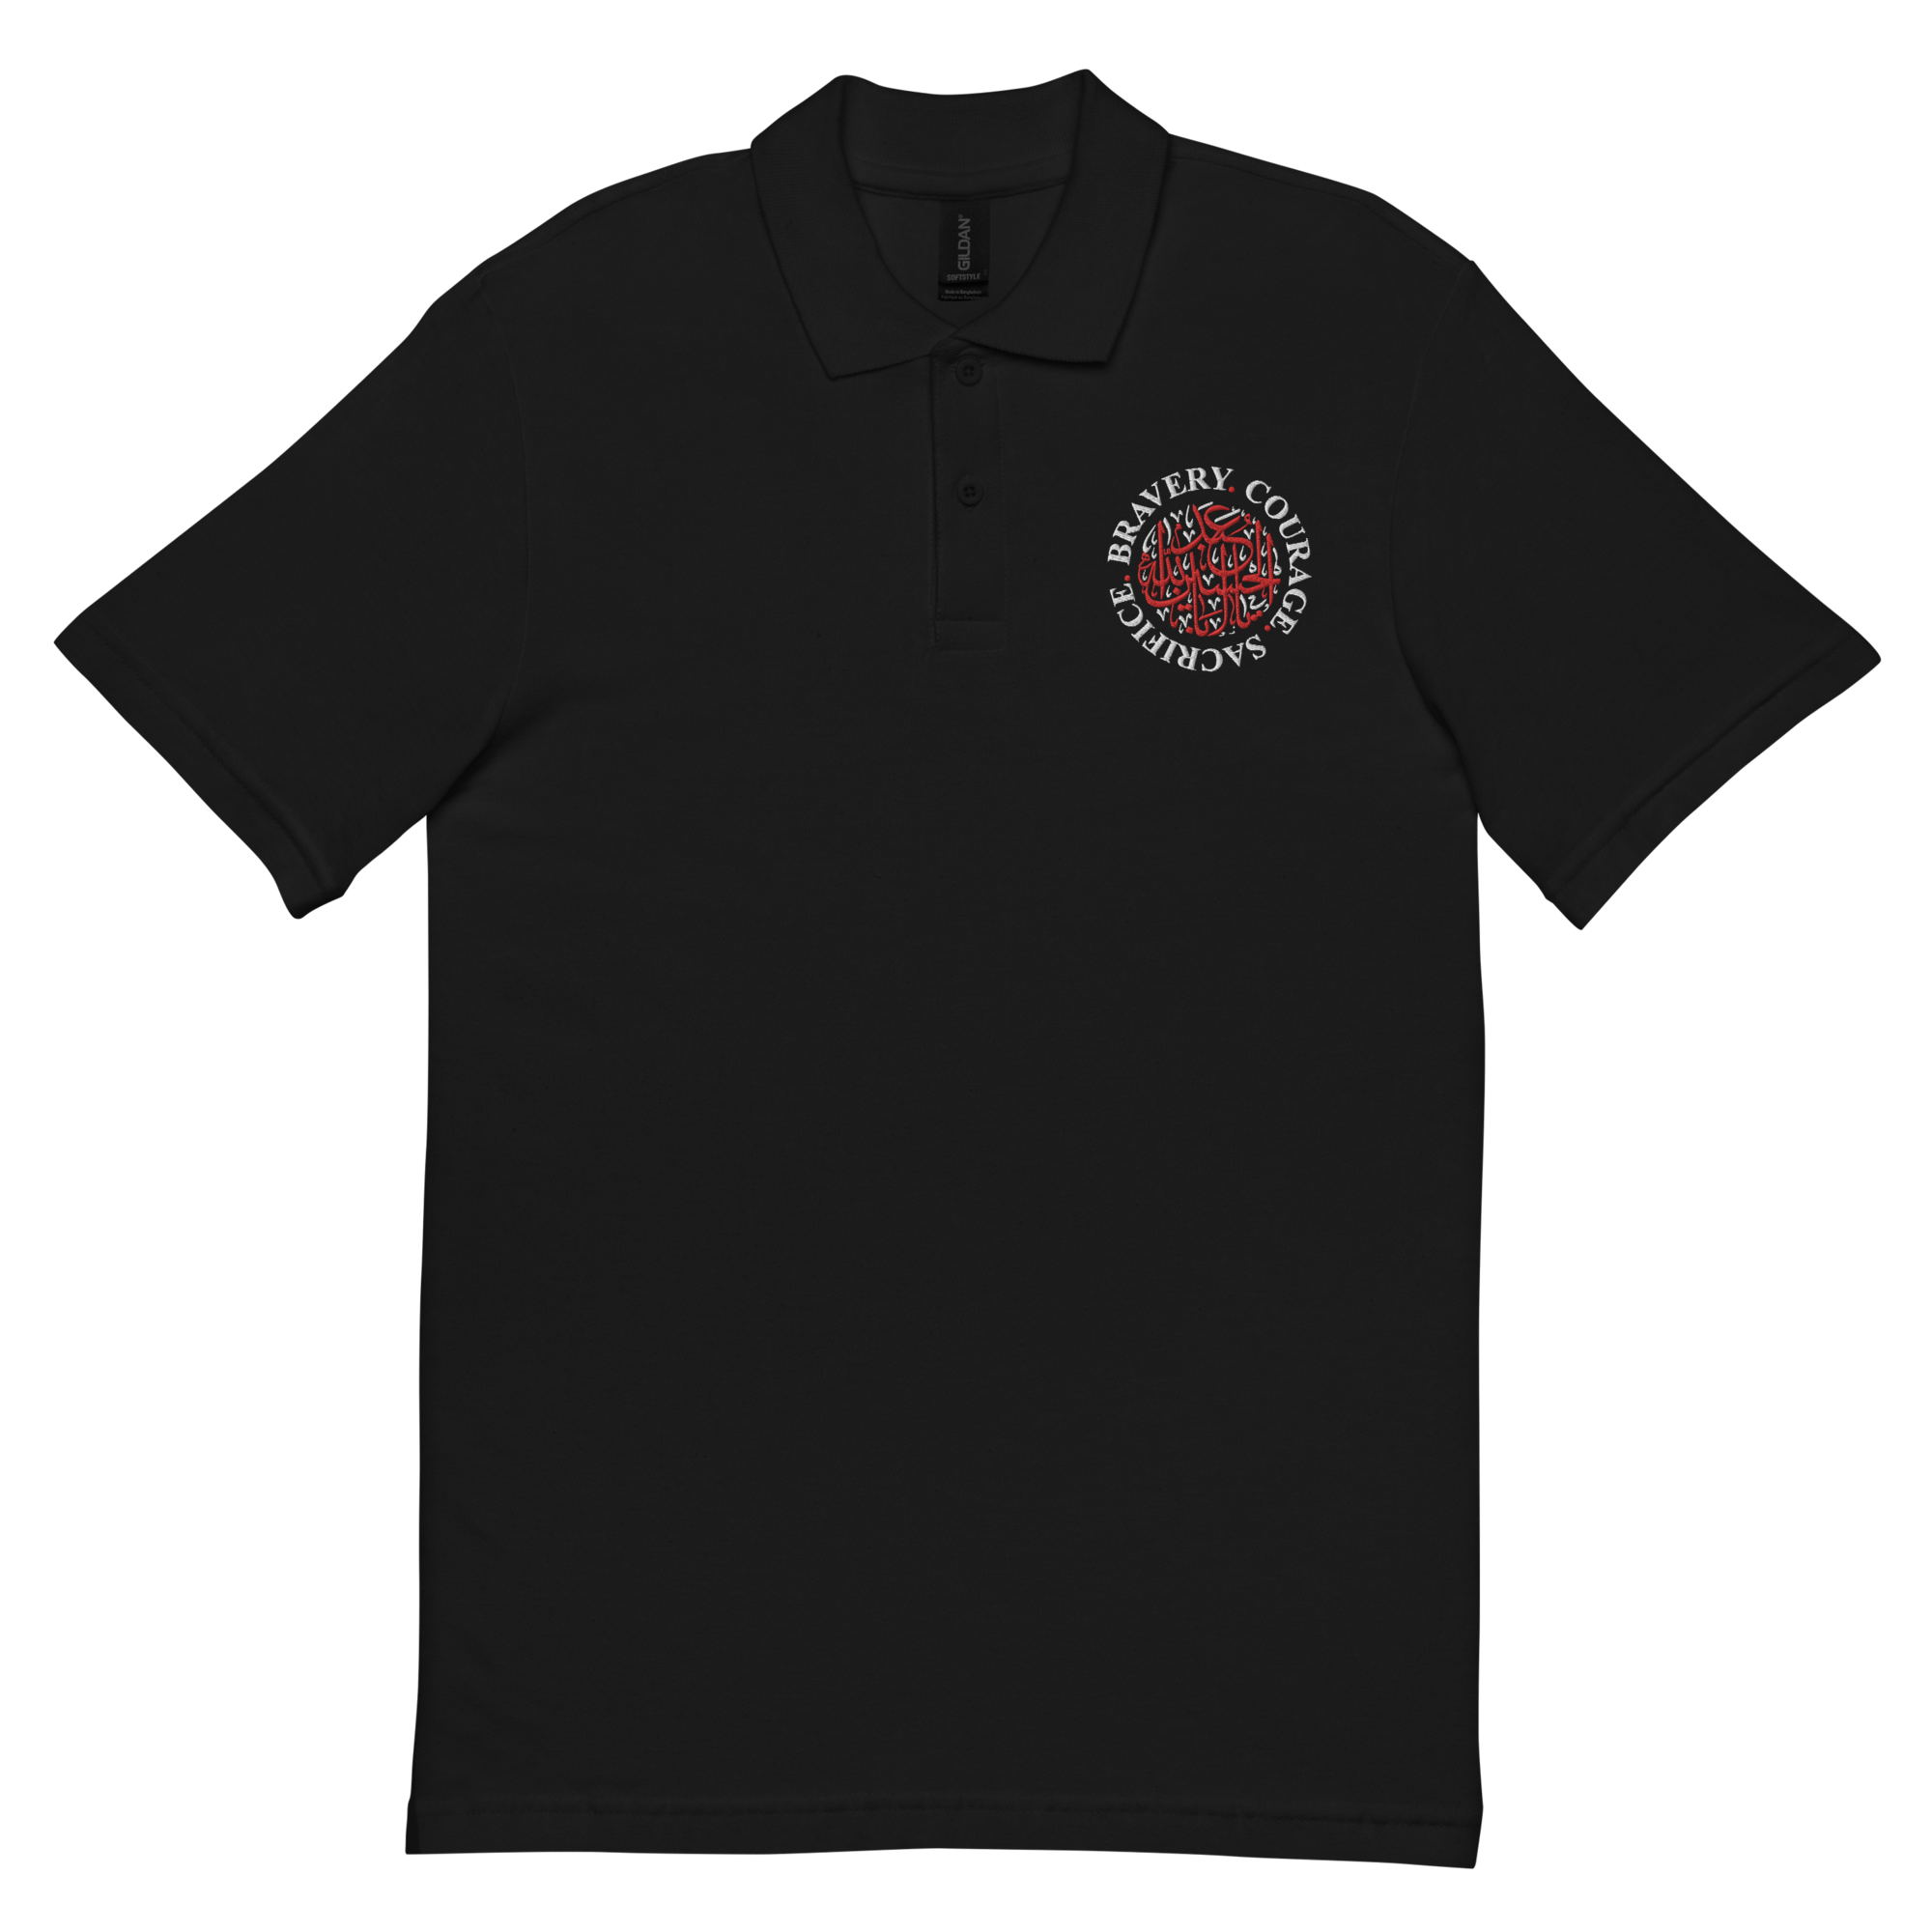 Hussaini Circle - Adult Polo Shirt